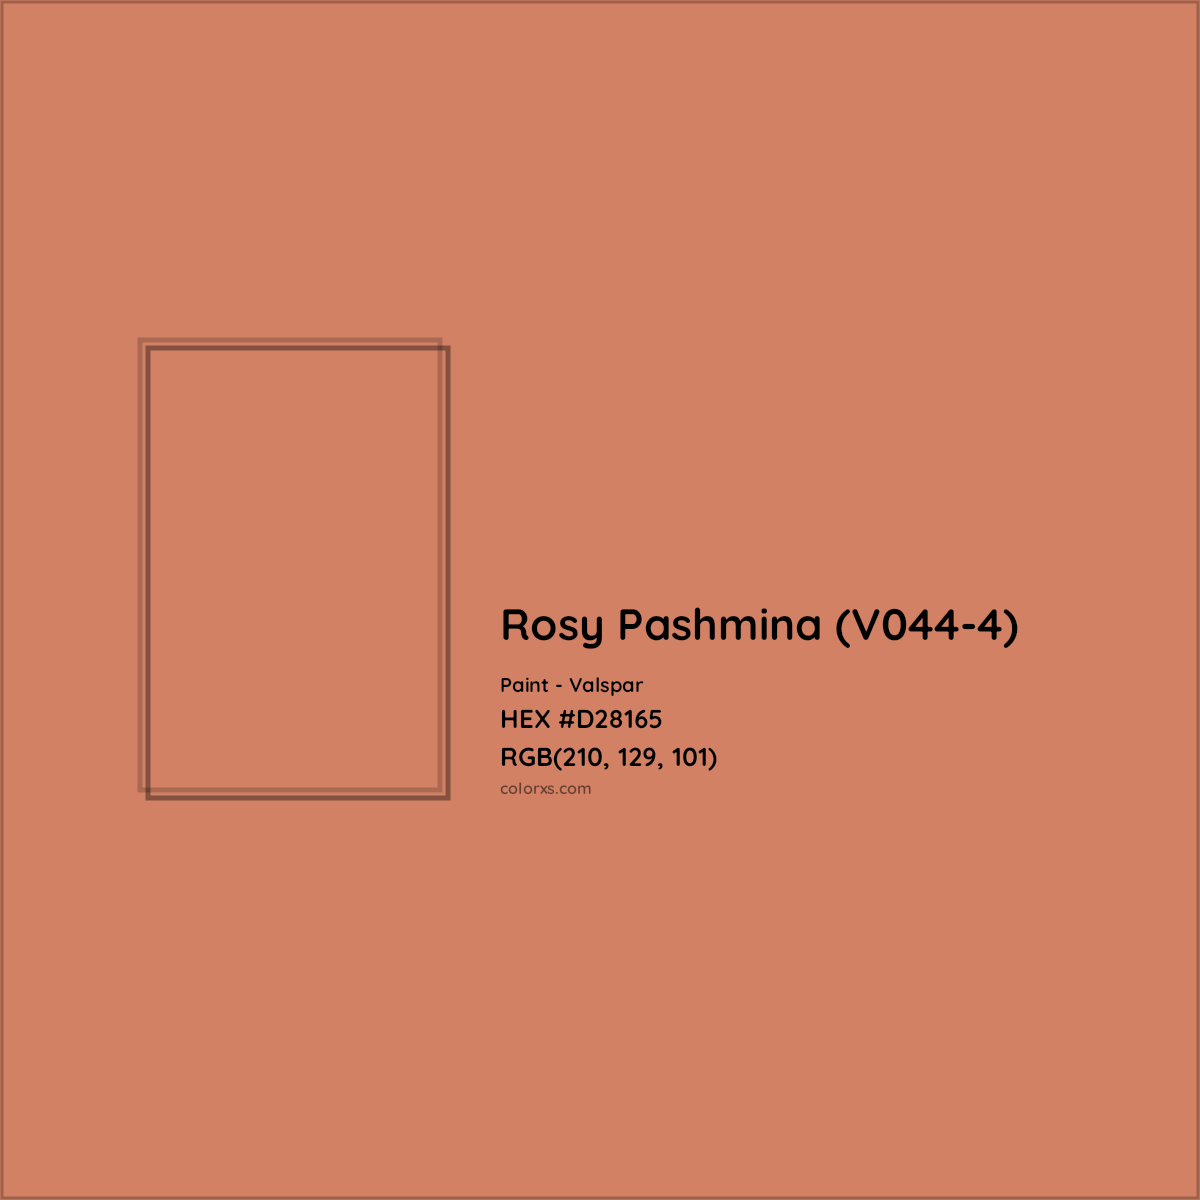 HEX #D28165 Rosy Pashmina (V044-4) Paint Valspar - Color Code